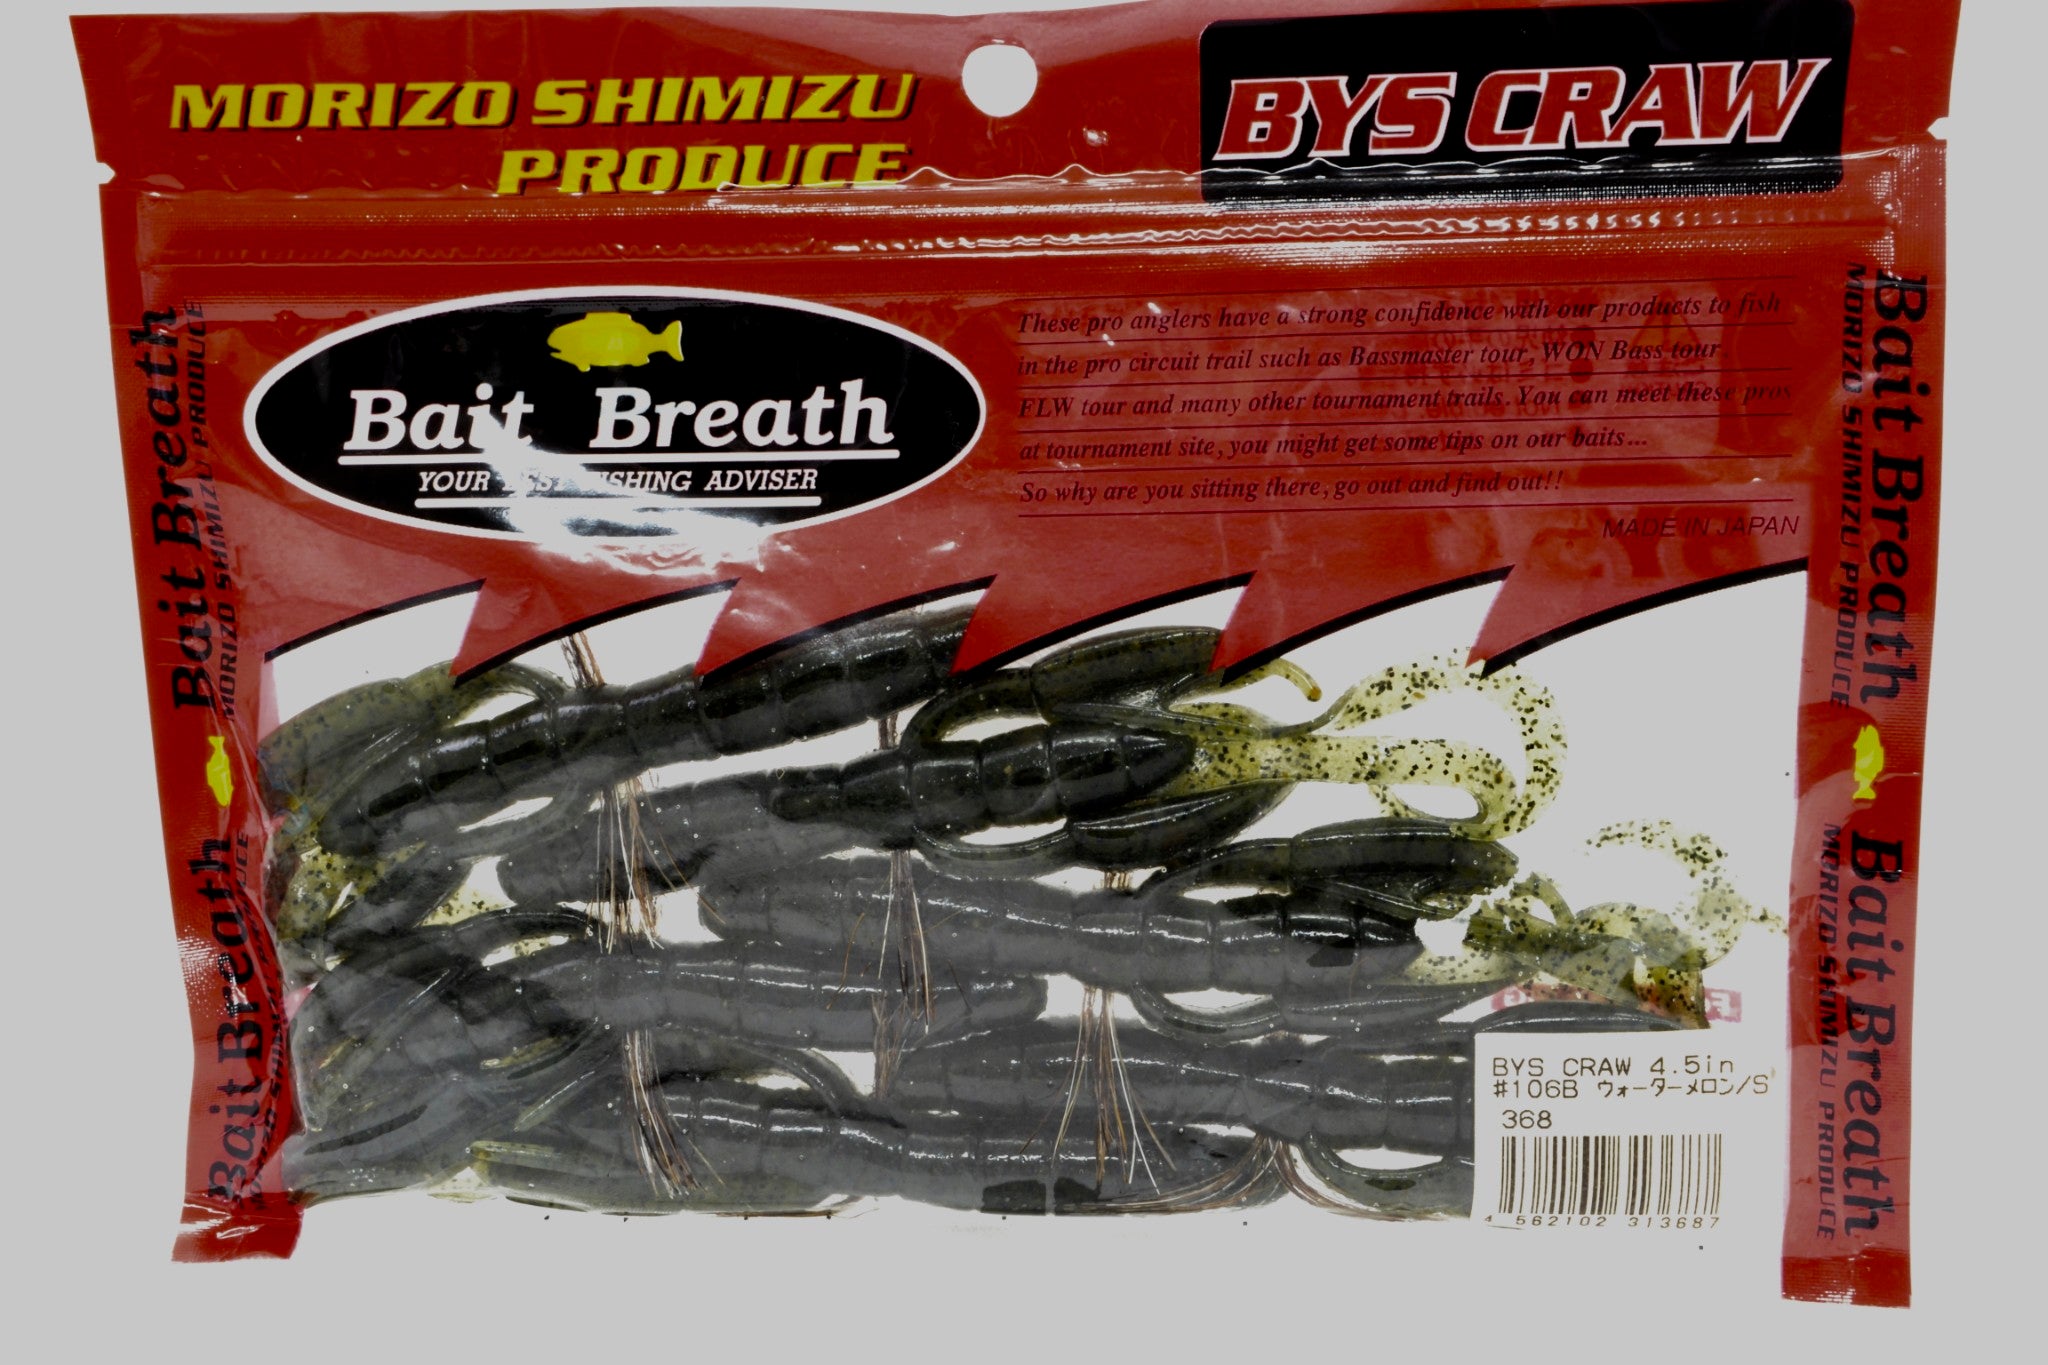 Bait Breath - BYS Craw